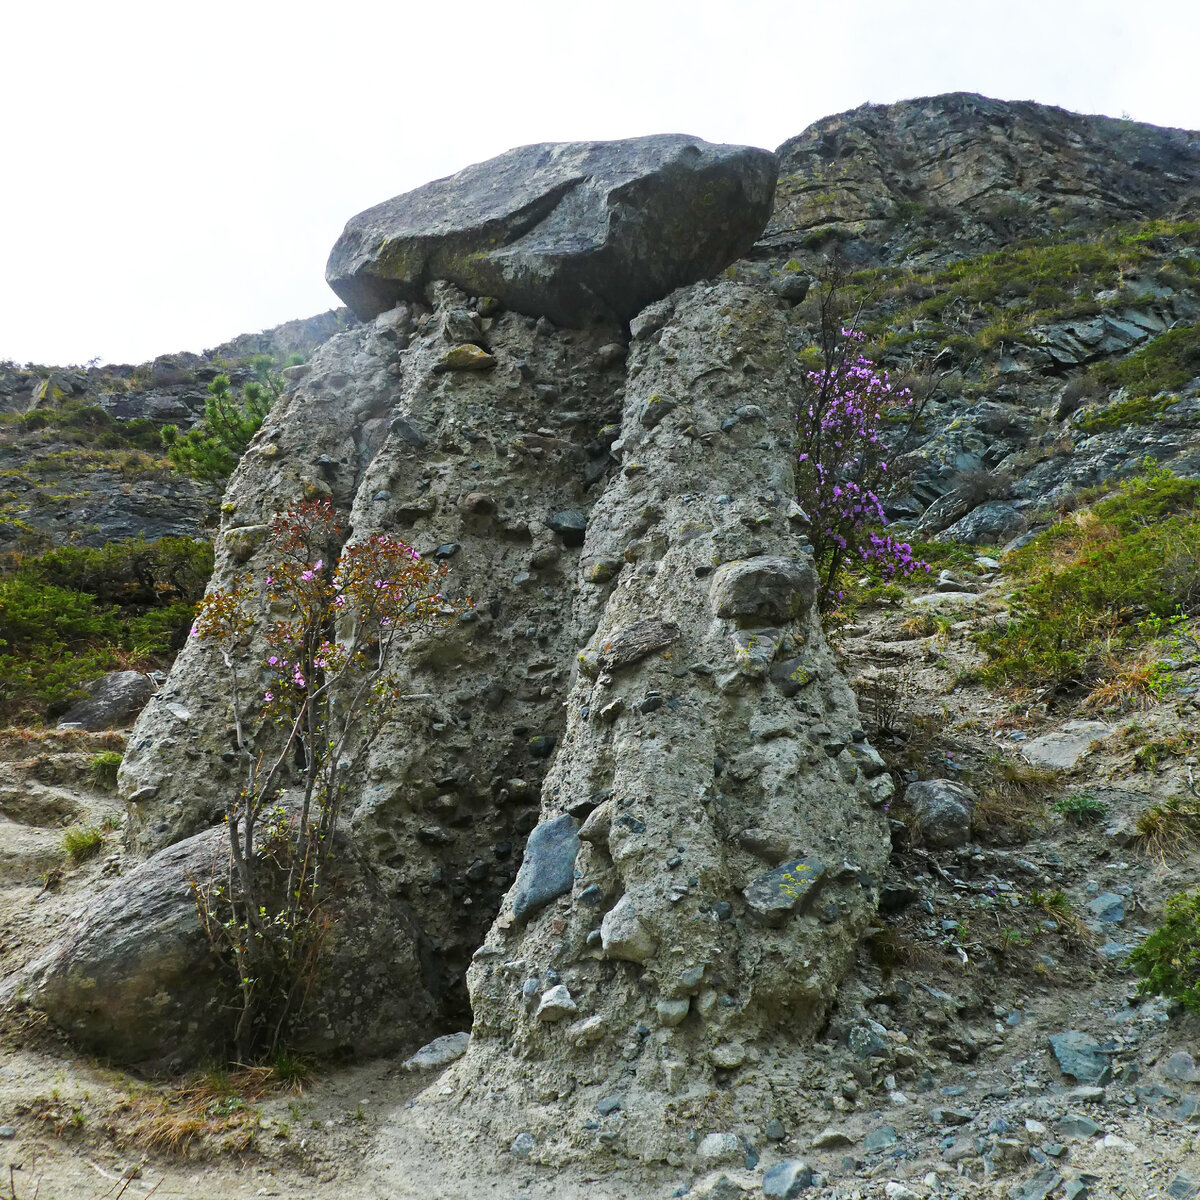 Урочище Аккурум с Каменными грибами - одно из чудес России, сотворённое самой природой, всего в 34 км от перевала Кату-Ярык.-5-6